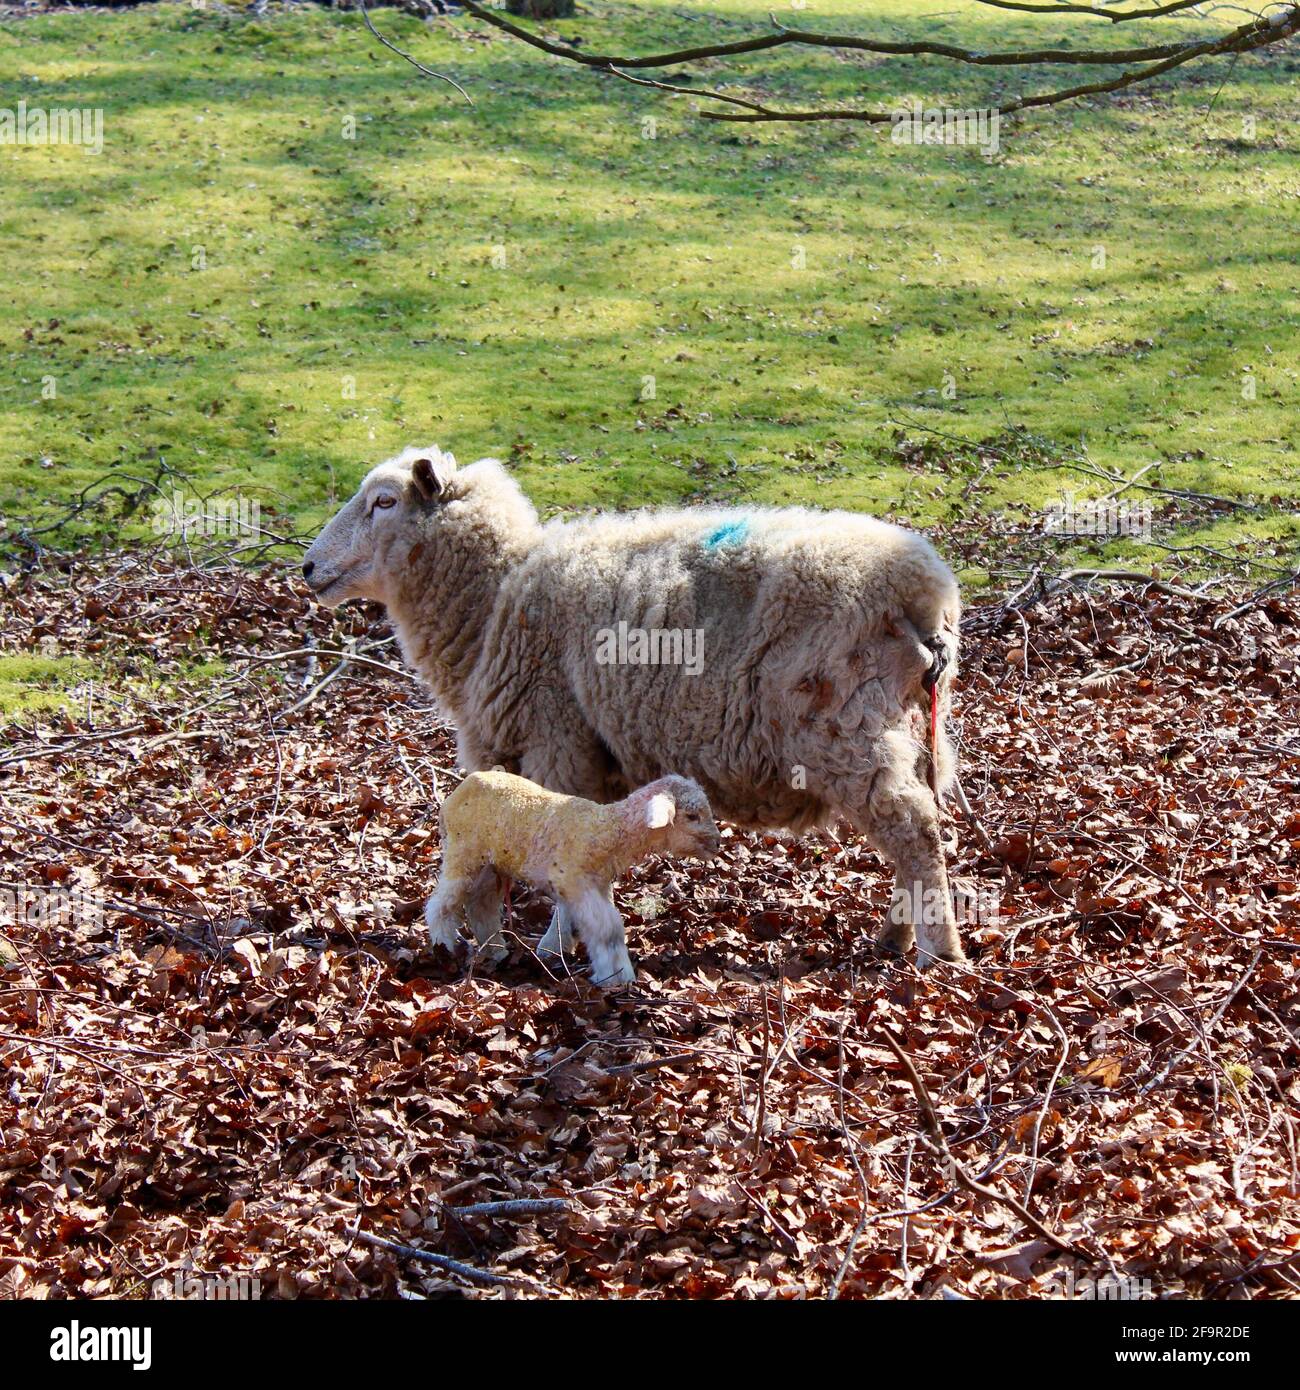 L'agneau qui vient de naître voit pour la première fois la lumière du jour s'ajouter au monde. Tout semblait bien avec l'alimentation en cours. Banque D'Images